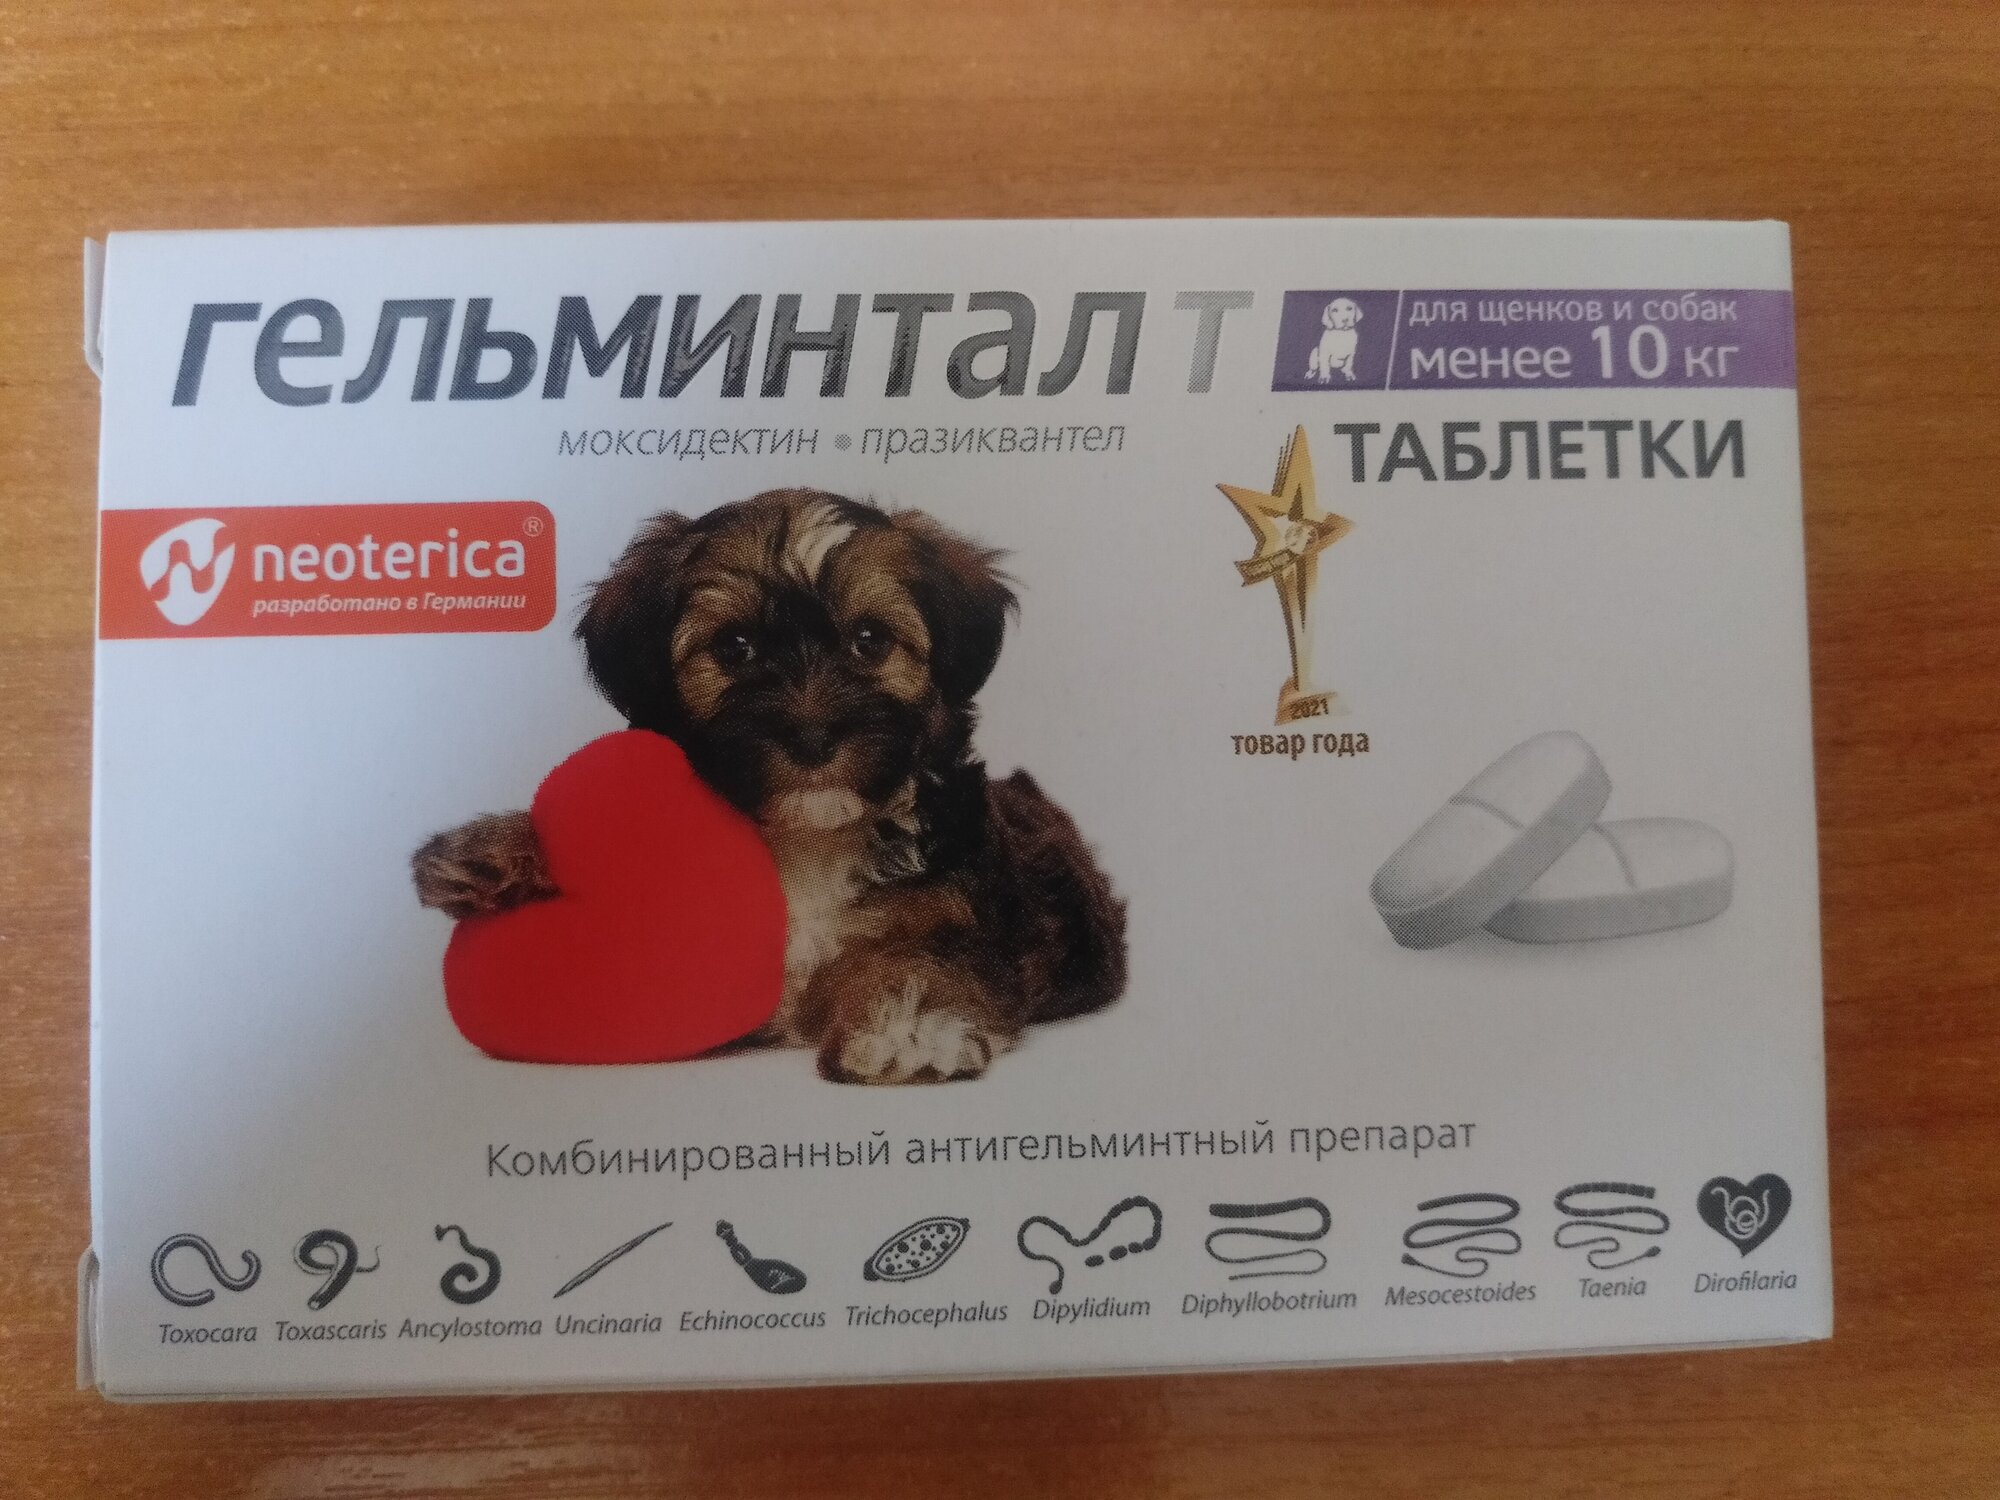 Гельминтал Гельминтал Т таблетки для щенков и собак менее 10 кг, 2 таб.